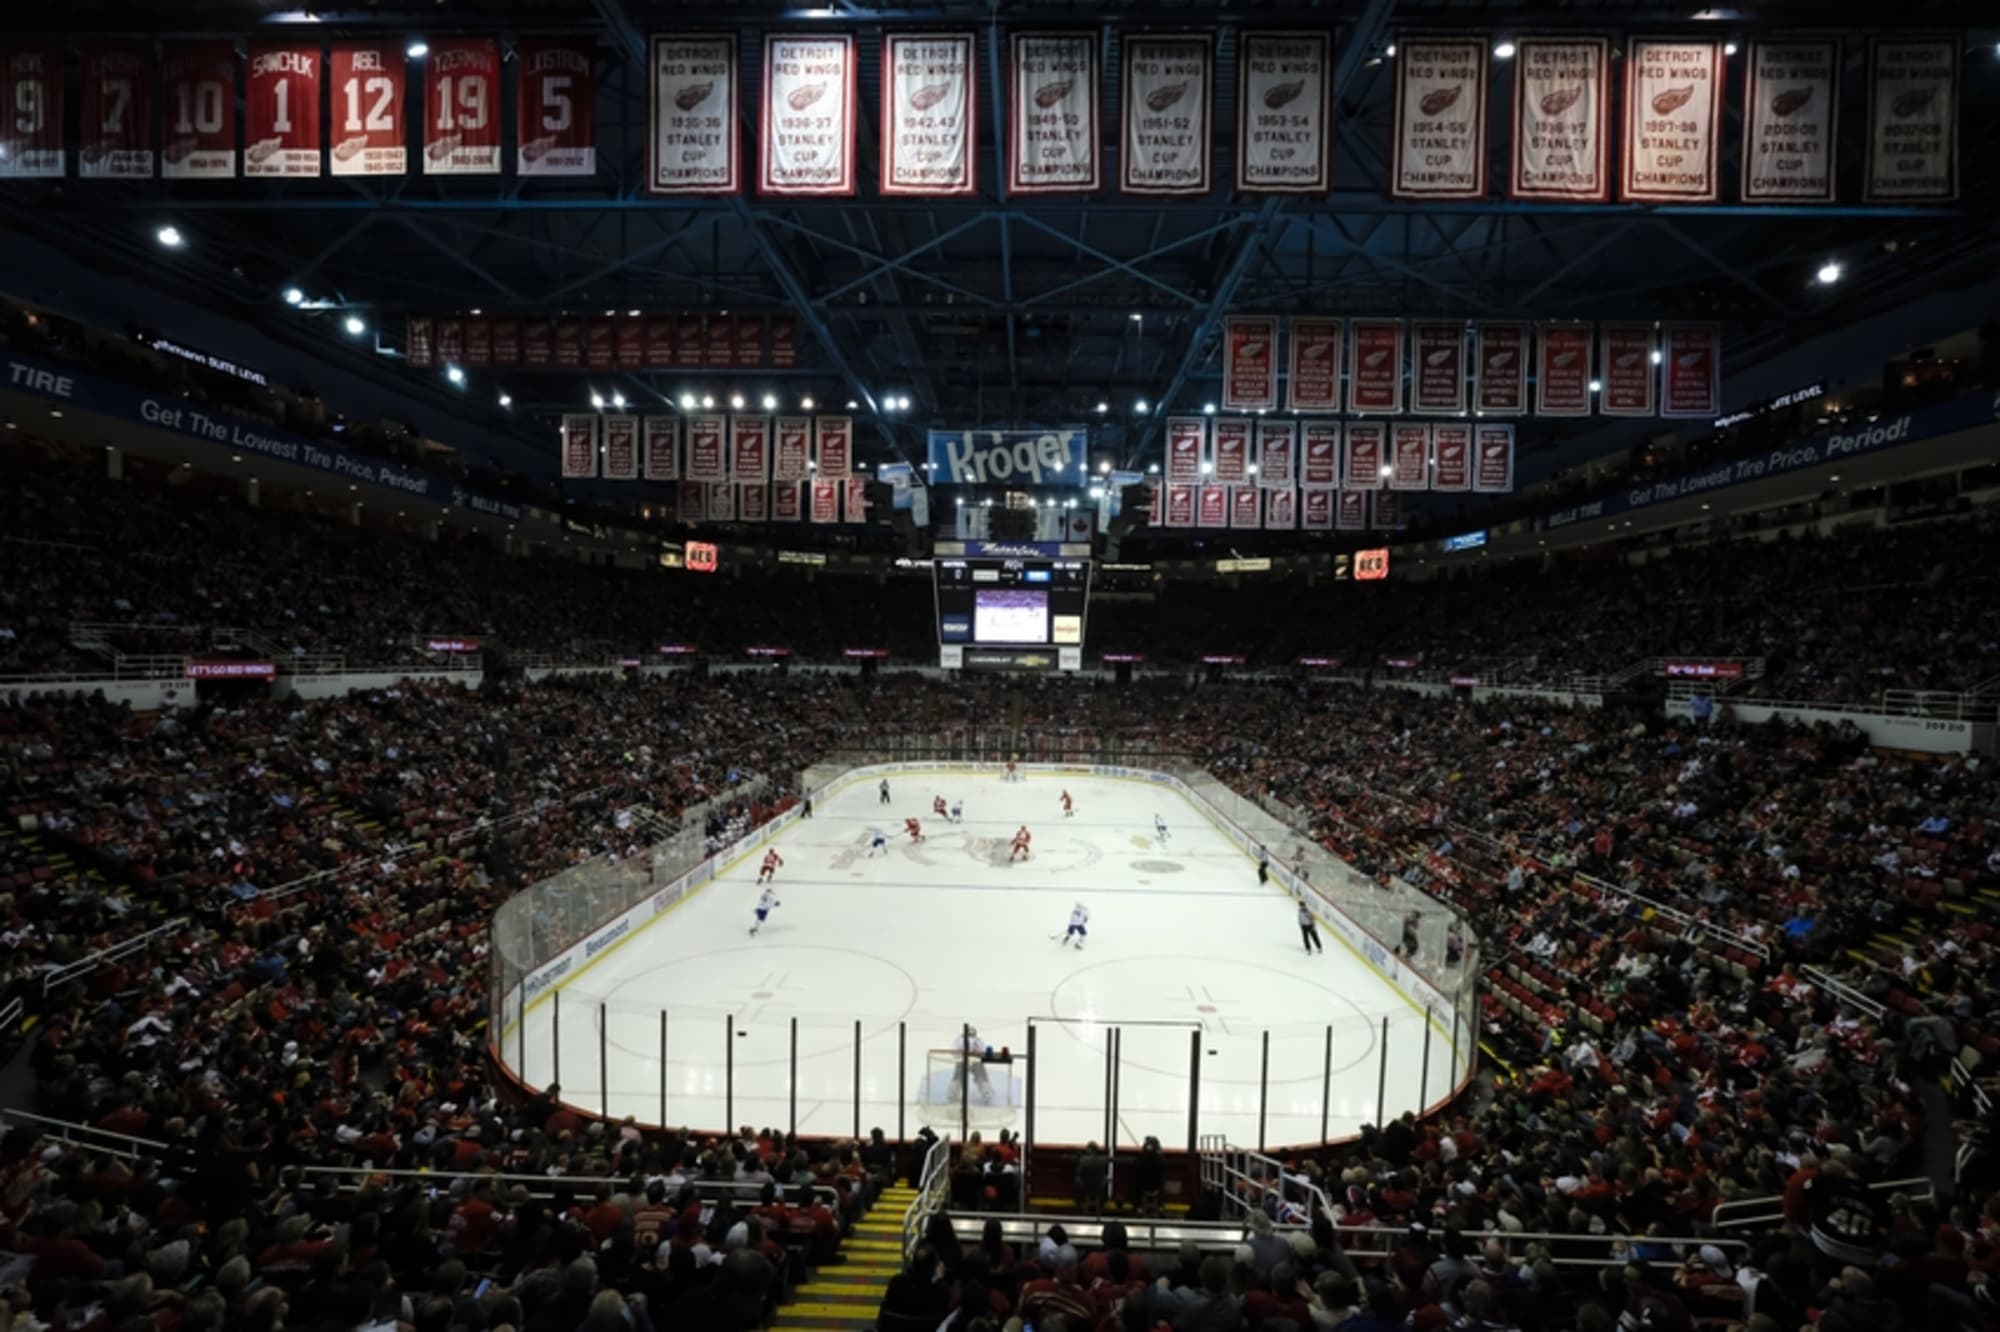 File:Detroit Red Wings vs. Pittsburgh Penguins, Joe Louis Arena